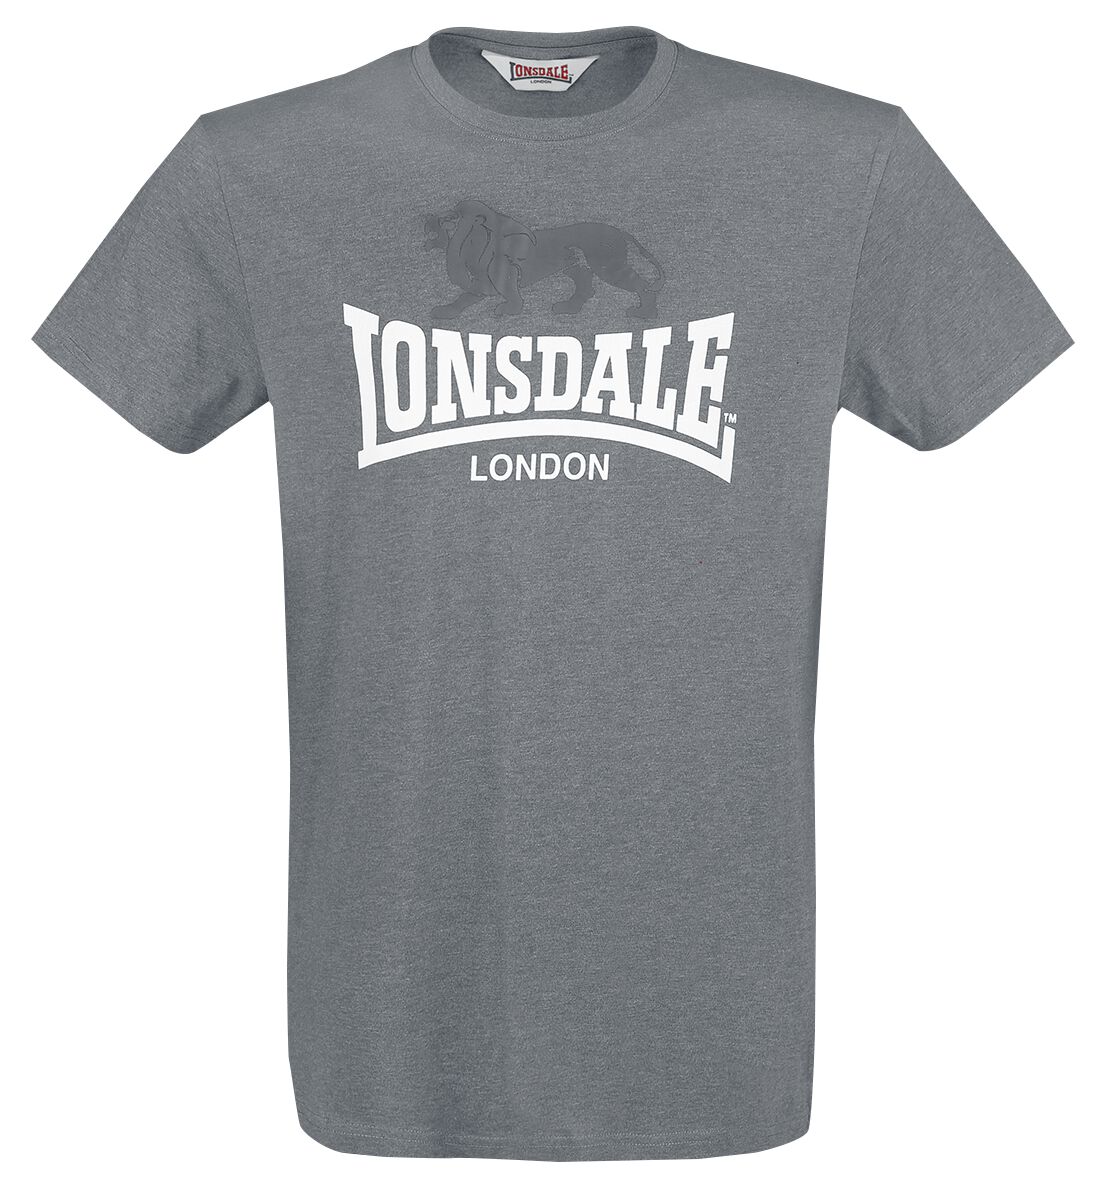 Lonsdale London T-Shirt - Gargrave - M bis 3XL - für Männer - Größe M - anthrazit